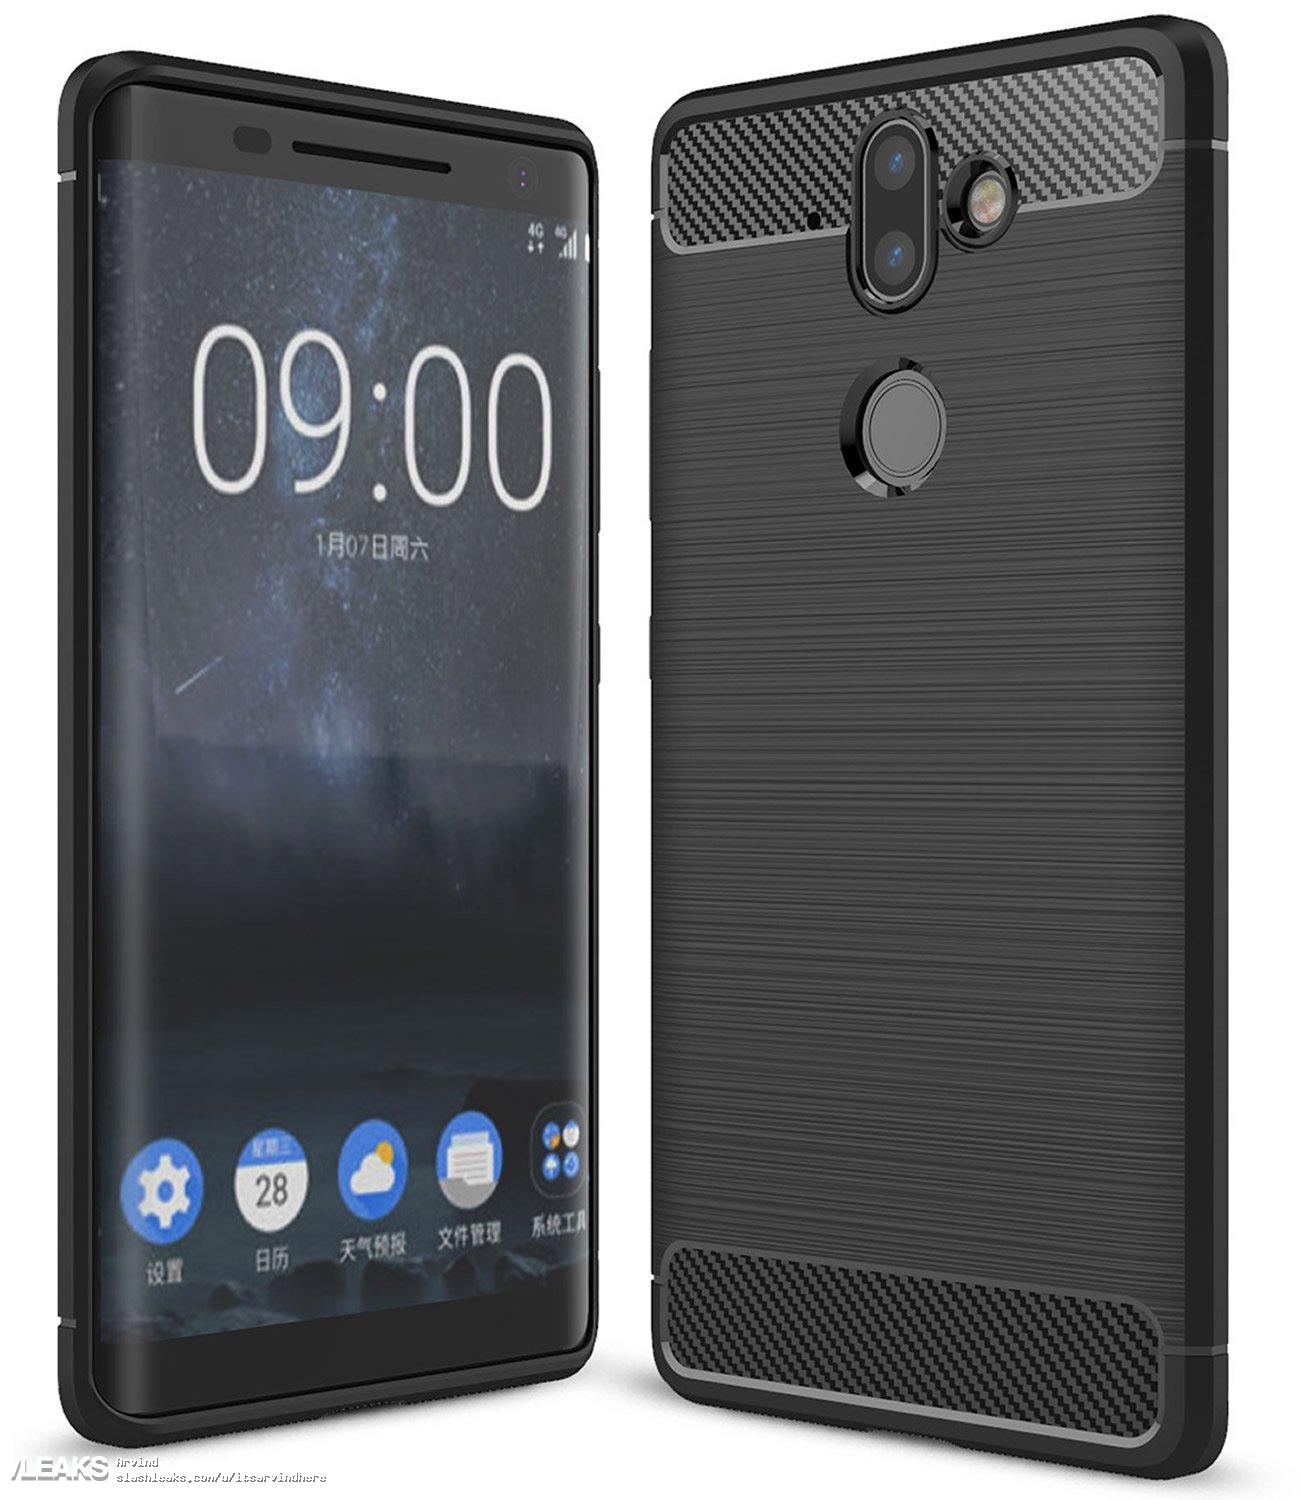 Design Nokia 9